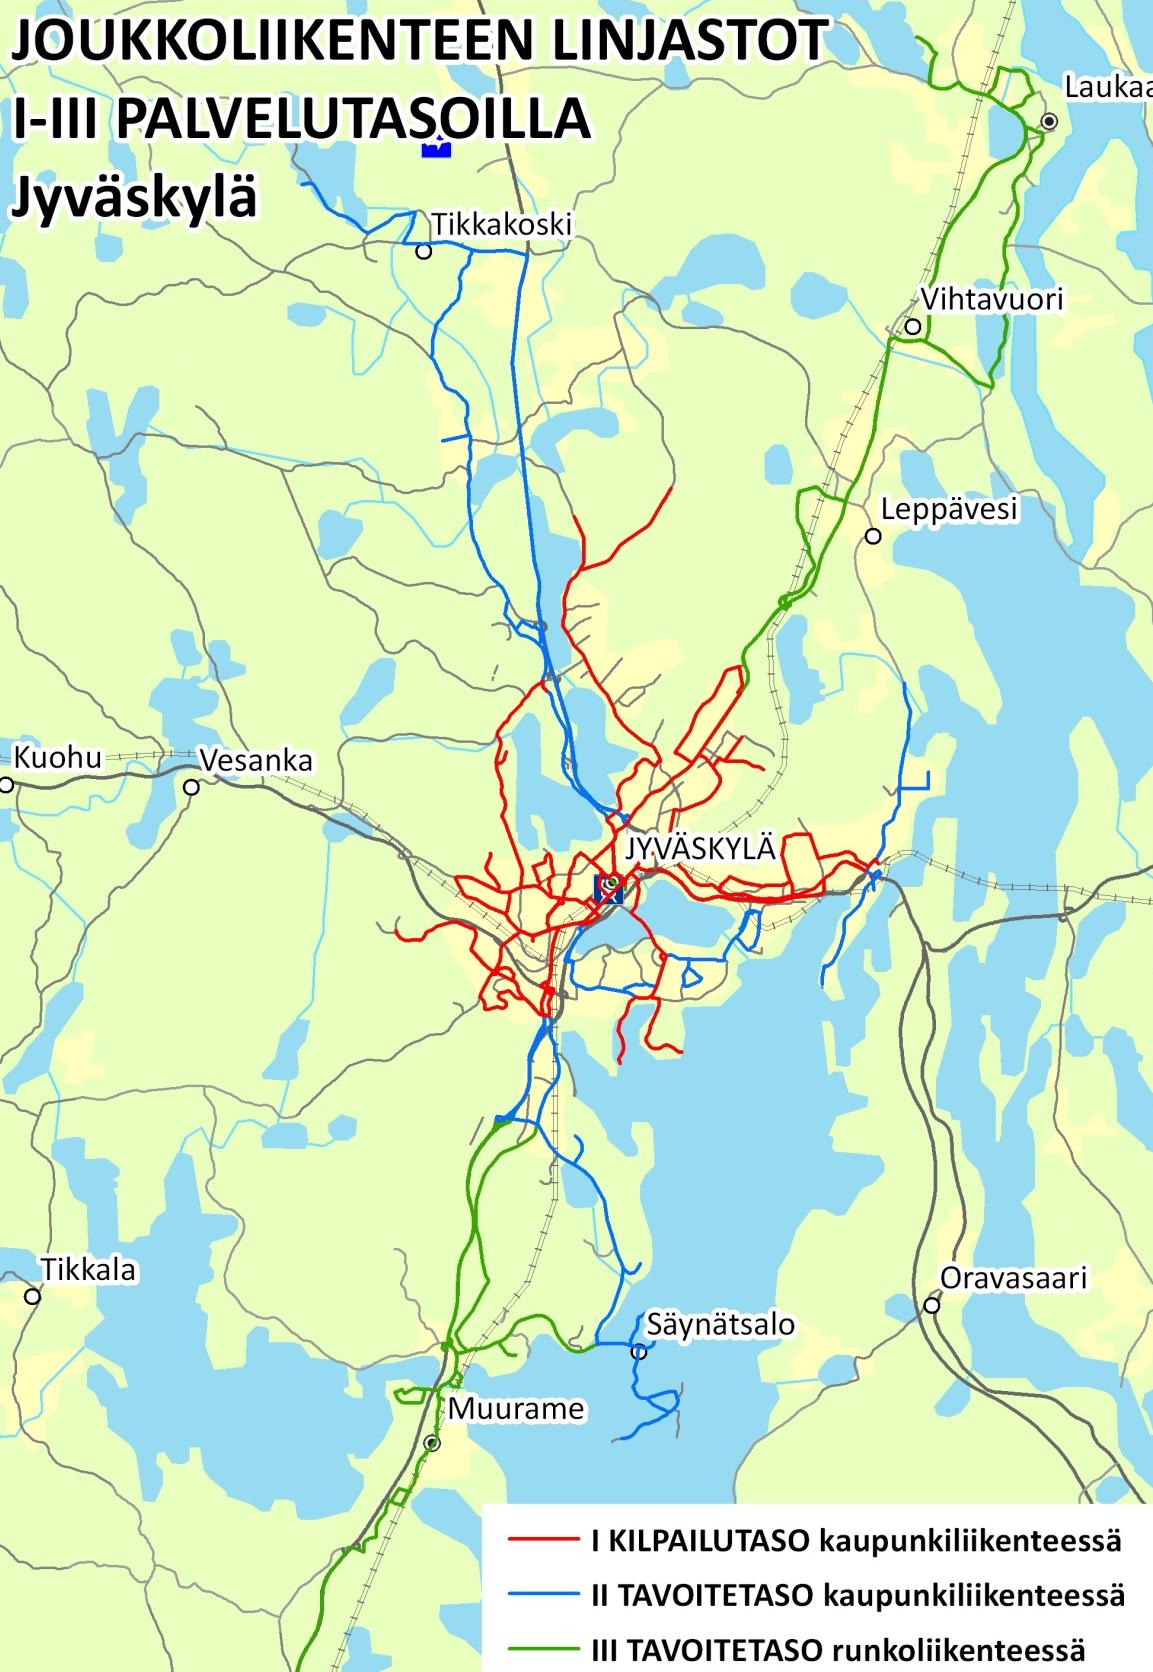 Jyväskylän joukkoliikenteen palvelutasoalueet I-III on esitetty kuvassa 2. Eteläportin-Kauramäen alue sijoittuu II tavoitetasolle kaupunkiliikenteessä.